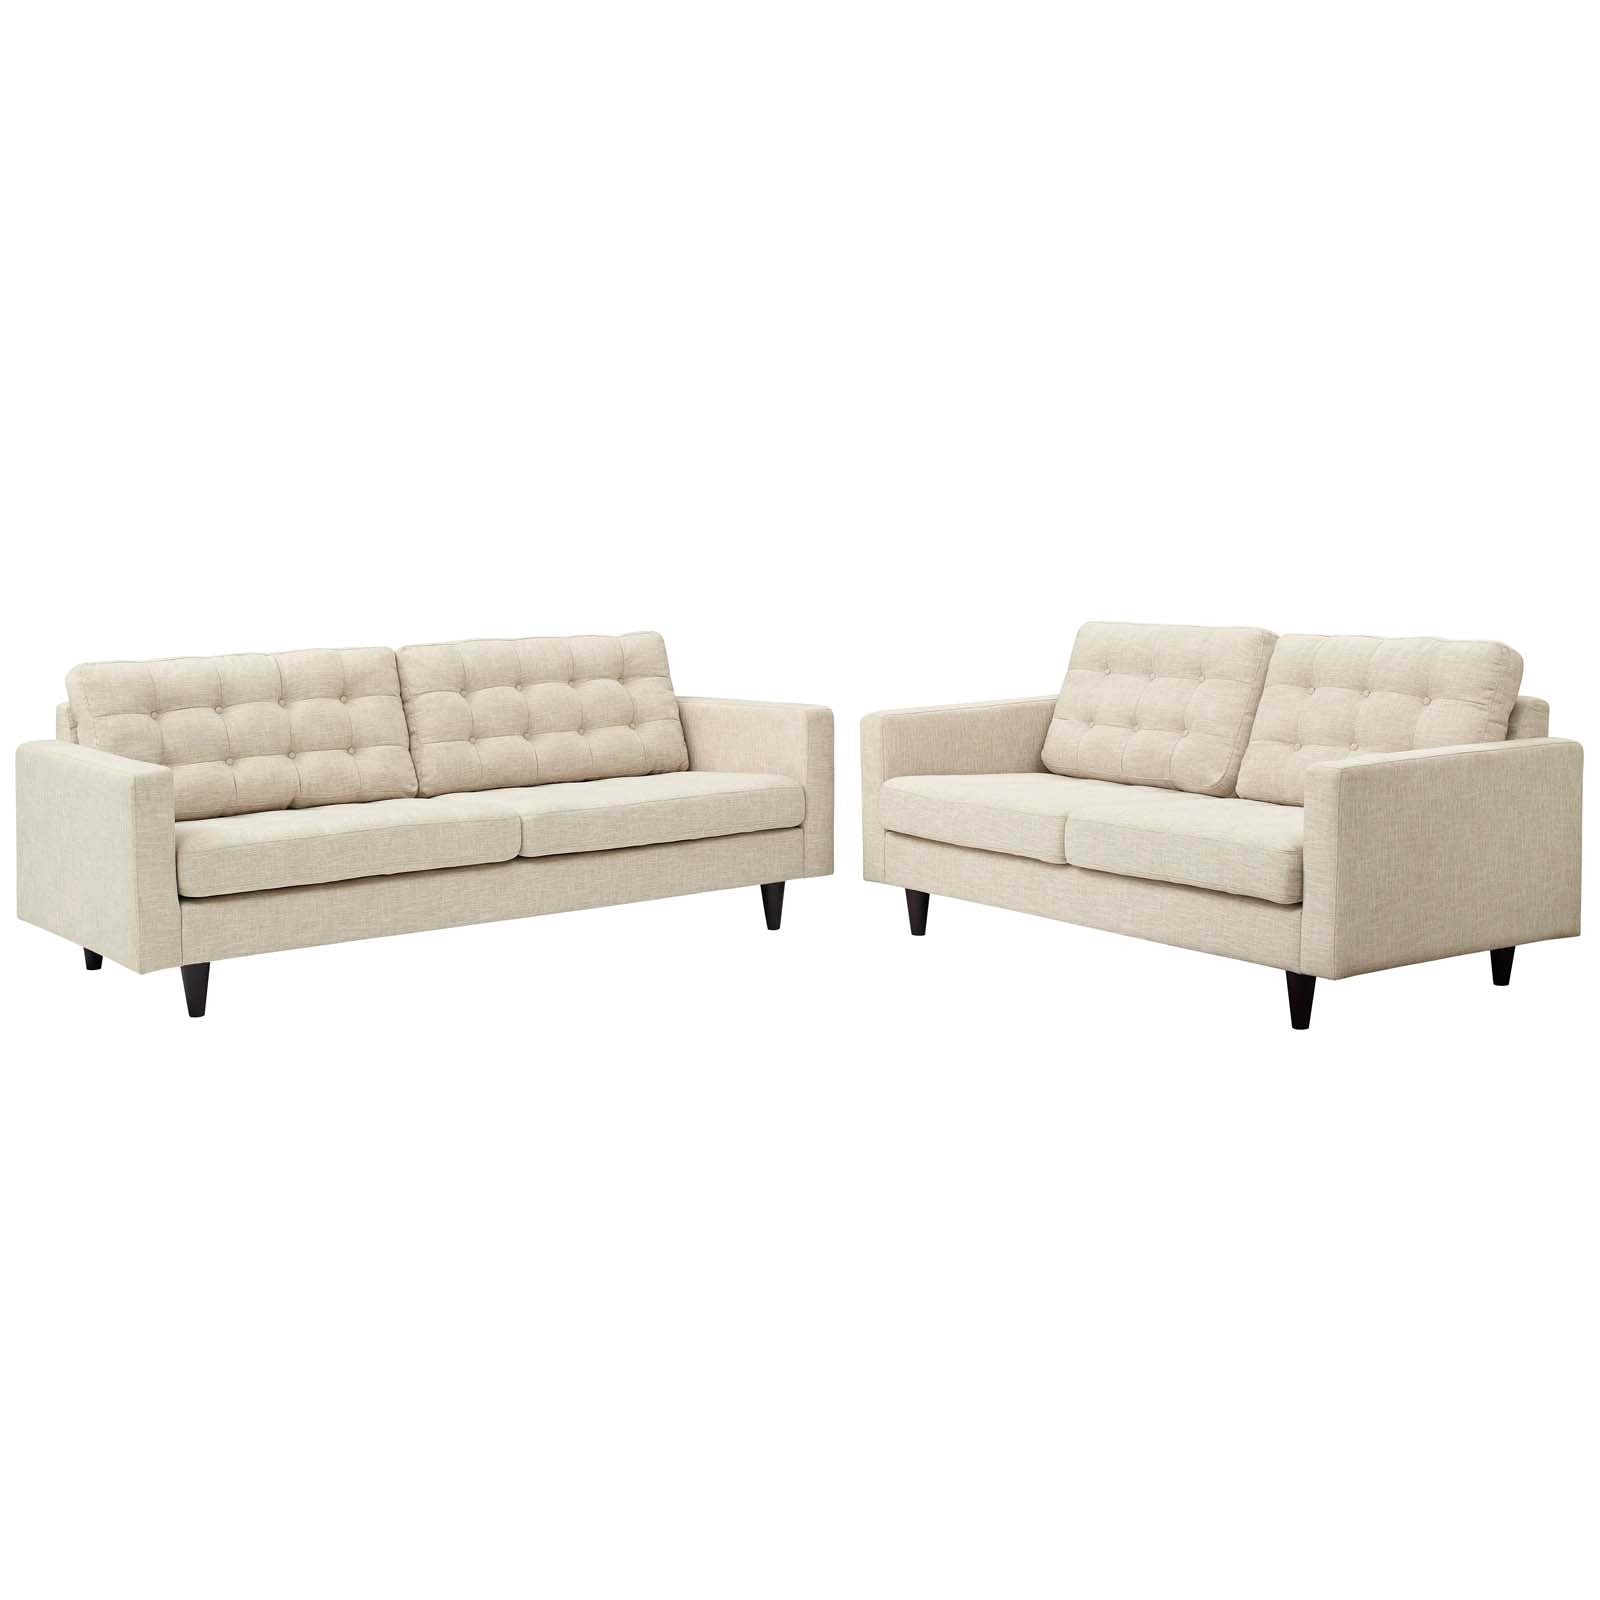 Modway Living Room Sets - Empress Sofa And Loveseat Set Of 2 Beige